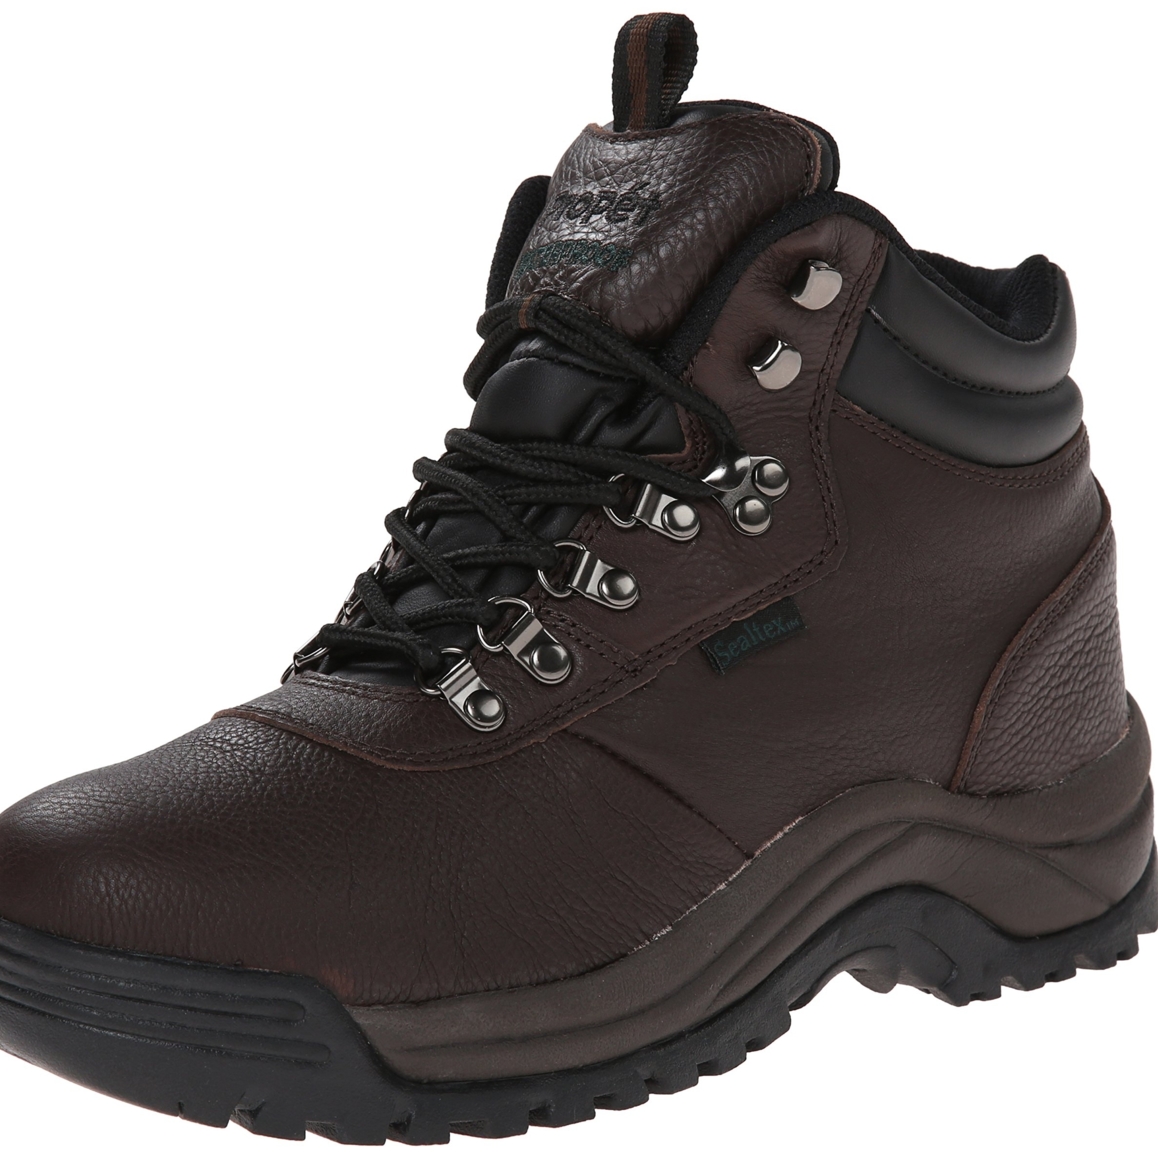 Propet Men's Cliff Walker Hiking Boot Bronco Brown - M3188BRO - BRONCO BROWN, 14 XX-Wide